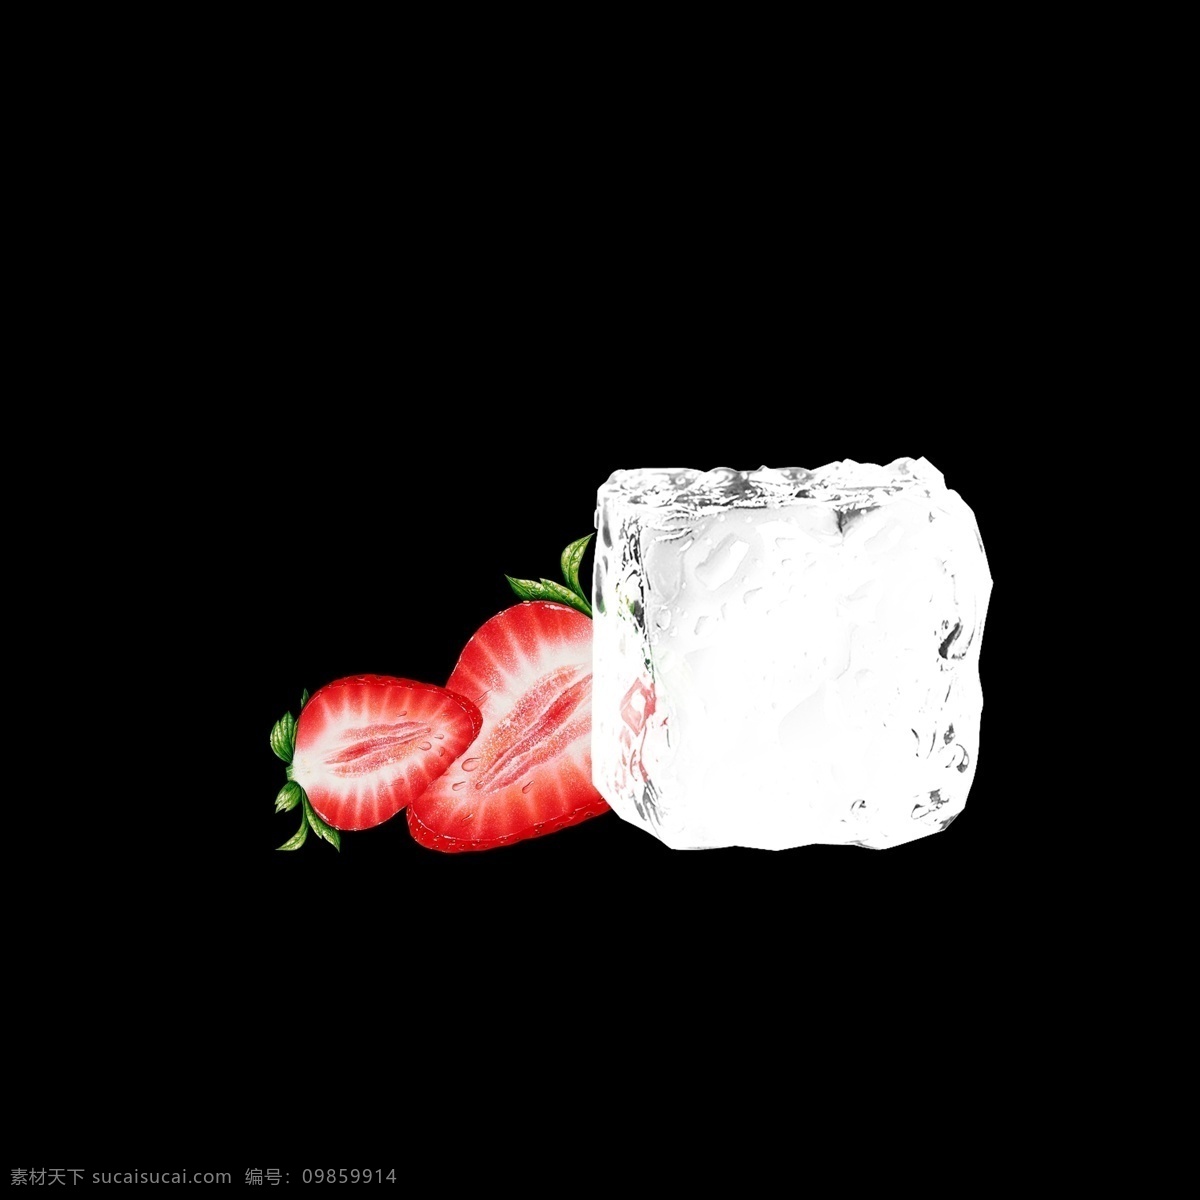 草莓 冰块 冰晶 元素 唯美冰块 草莓冰块 冰 不规则图形 几何冰晶 几何冰晶冰块